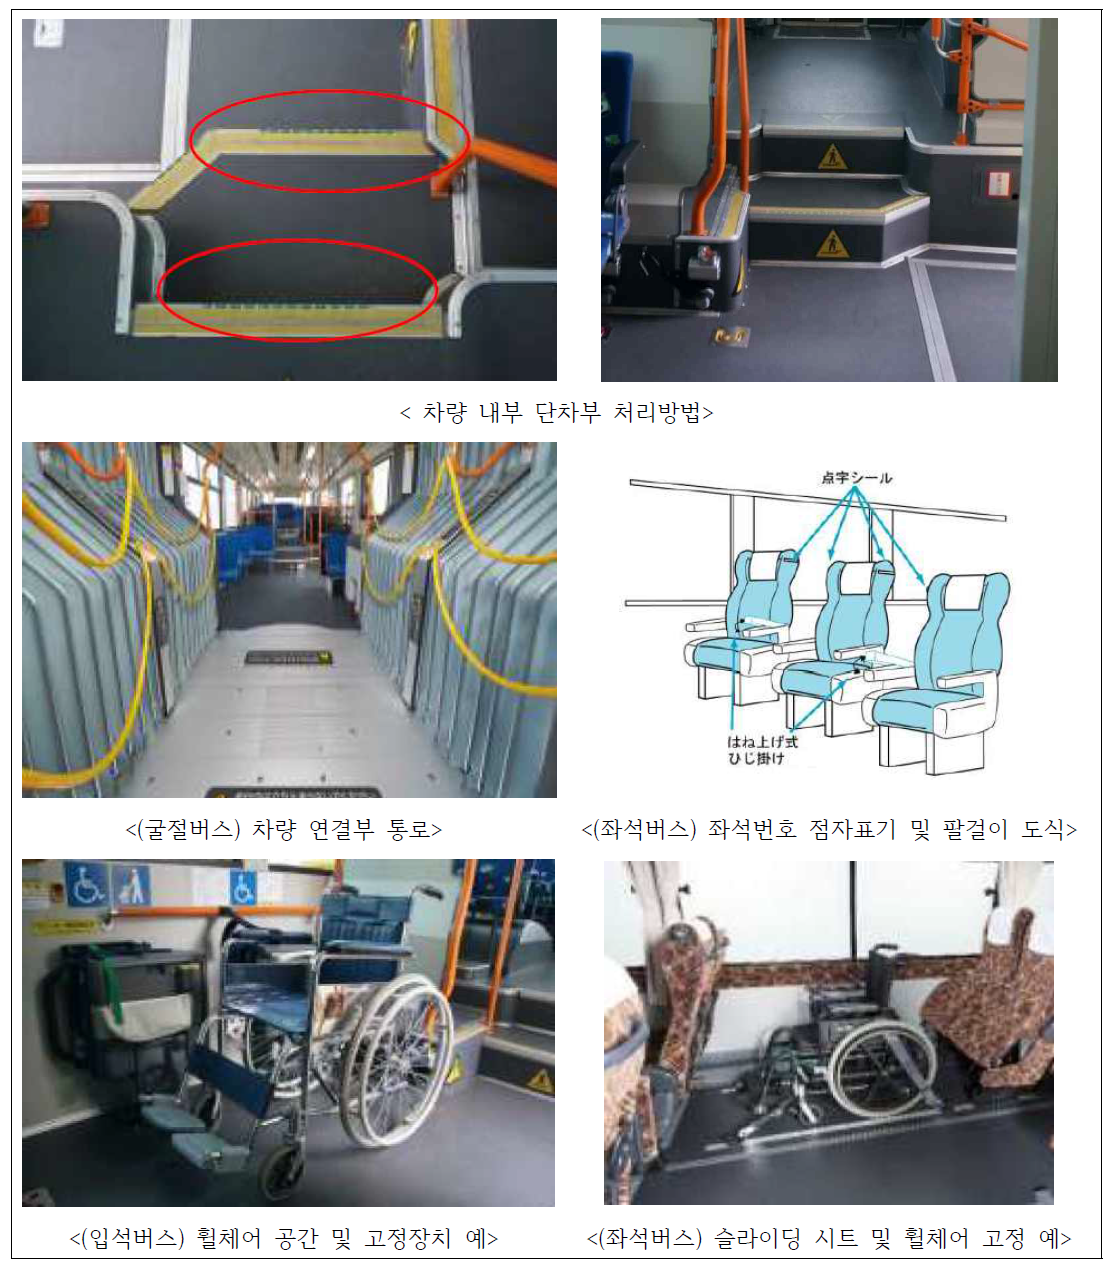 일본 이동편의시설 가이드라인의 버스종류별 시설 설명자료 예